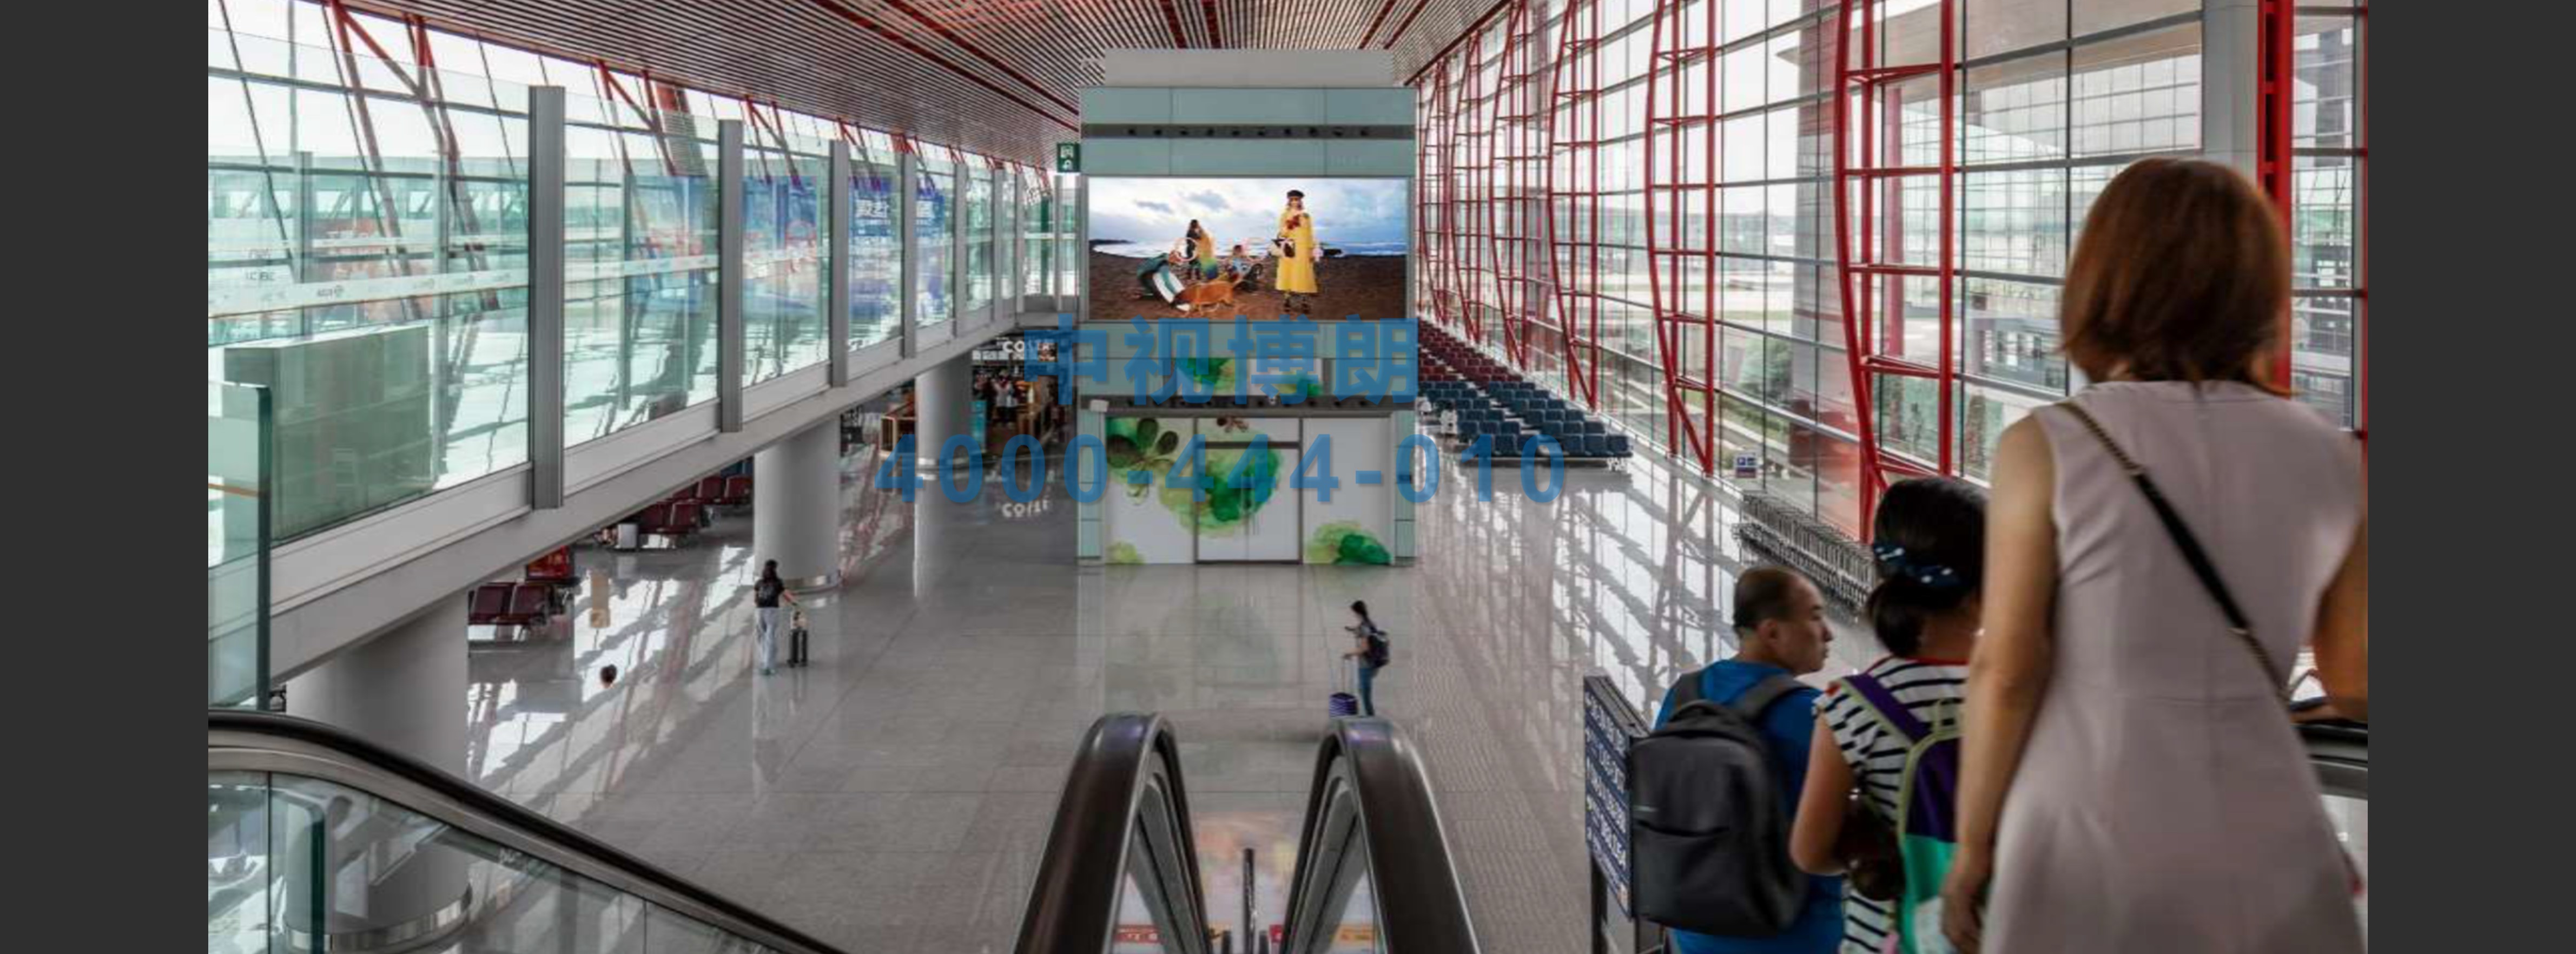 北京首都机场广告-T3候机区扶梯口正迎面灯箱